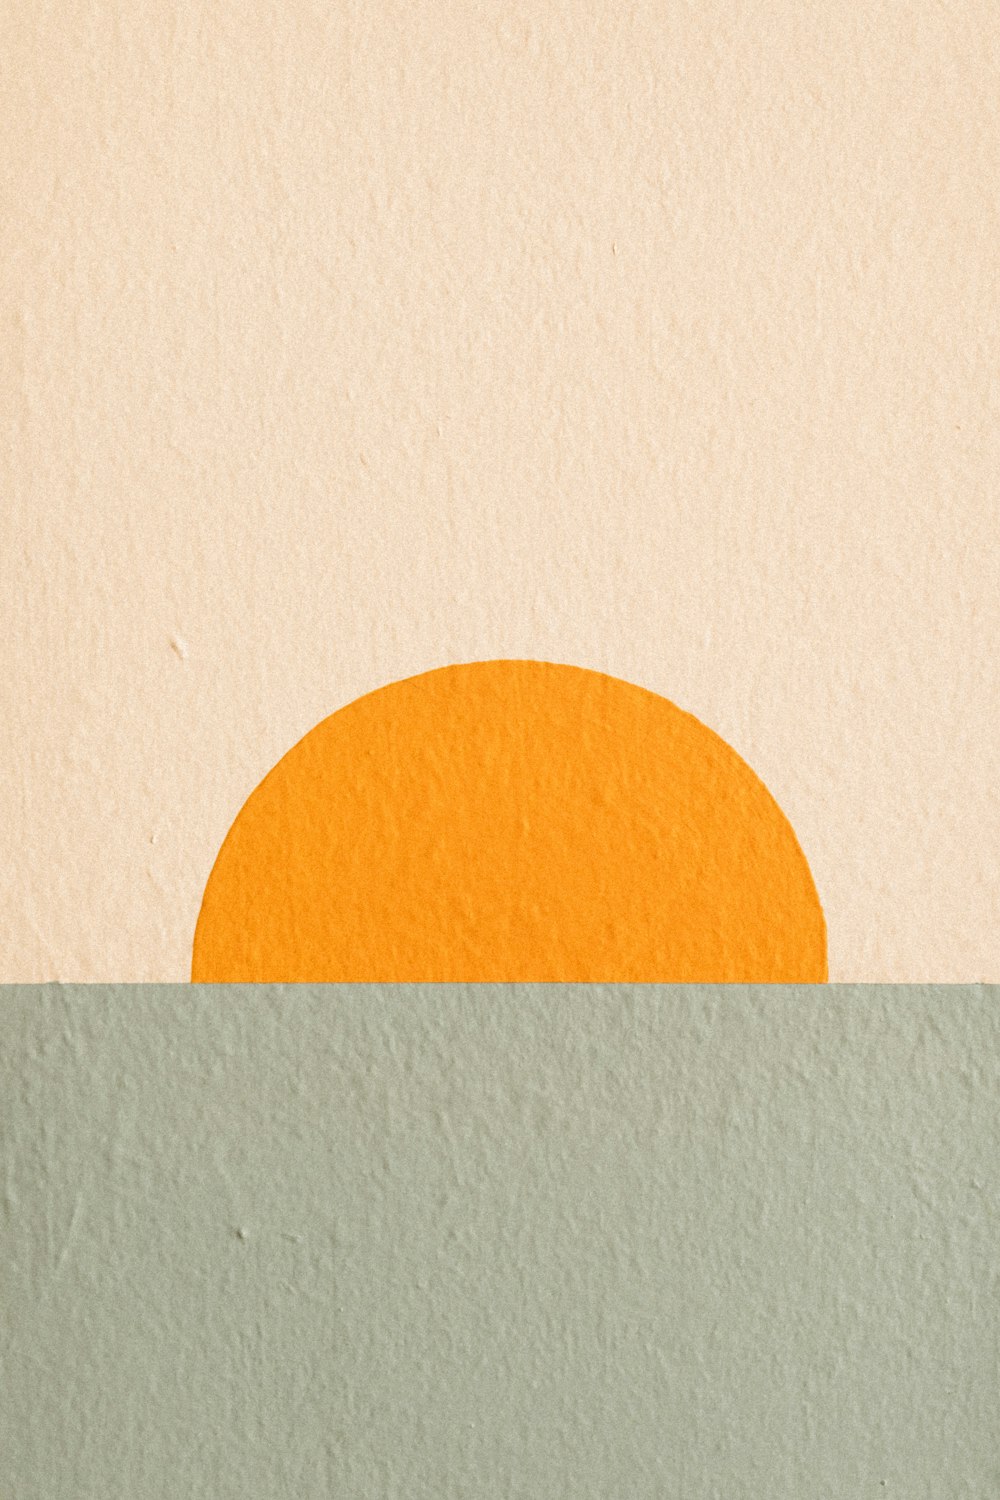 水域の真ん中にあるオレンジ色の太陽の絵